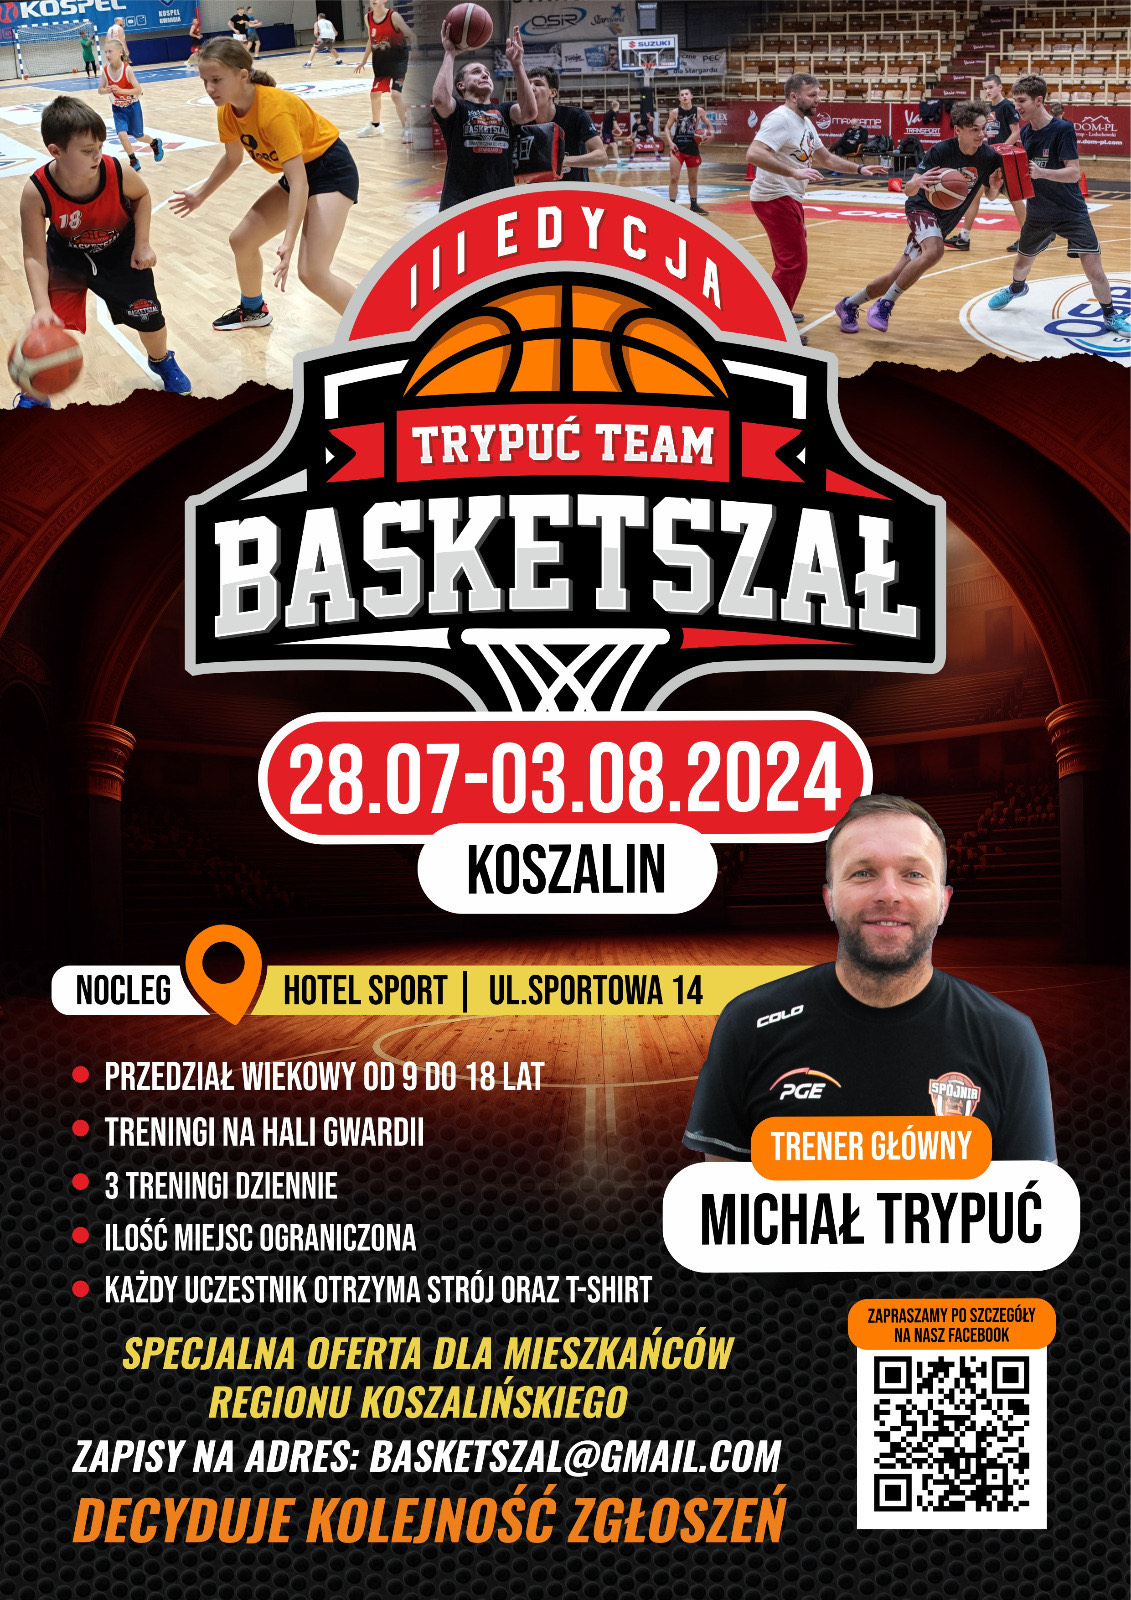 Plakat z zaproszeniem na Basketszał Trypuć Team 28 lipca do 3 sierpnia Koszalin